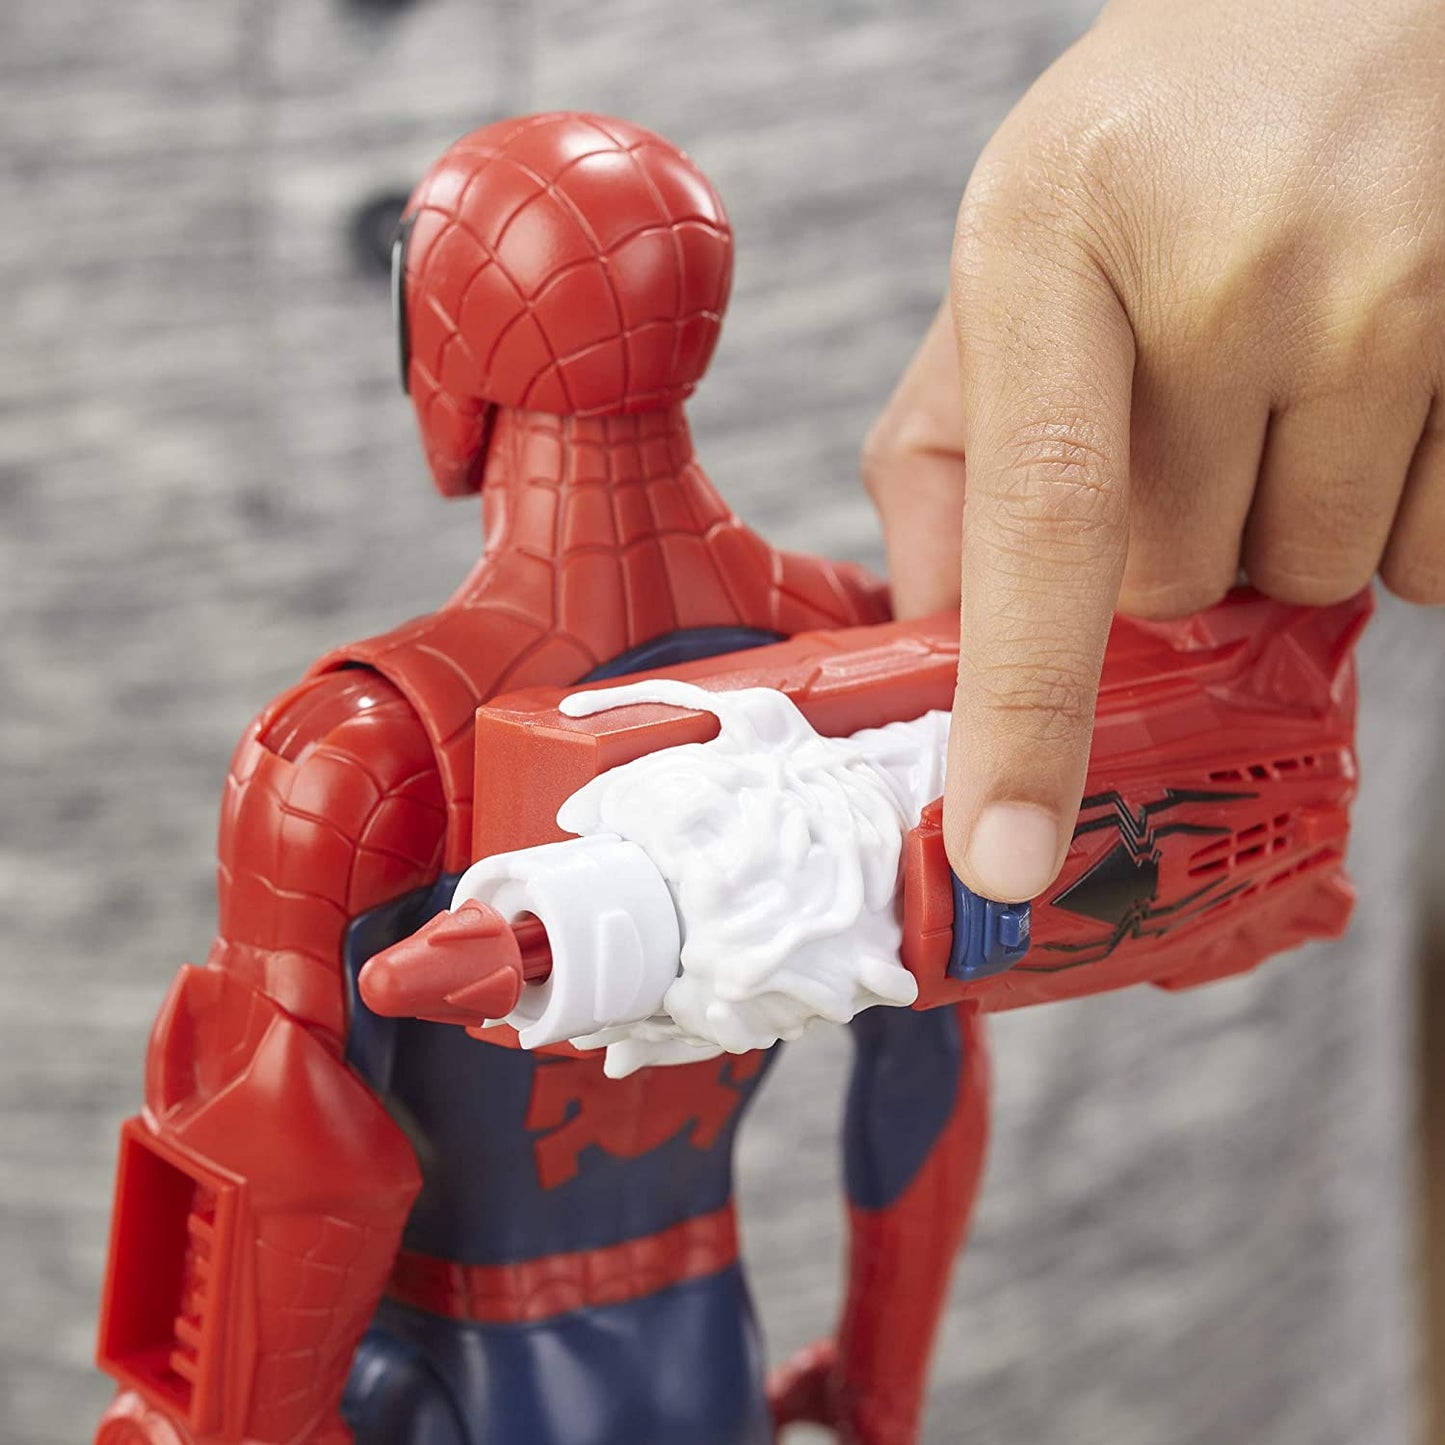 Marvel Spider-Man Titan Hero Power FX Spider-Man